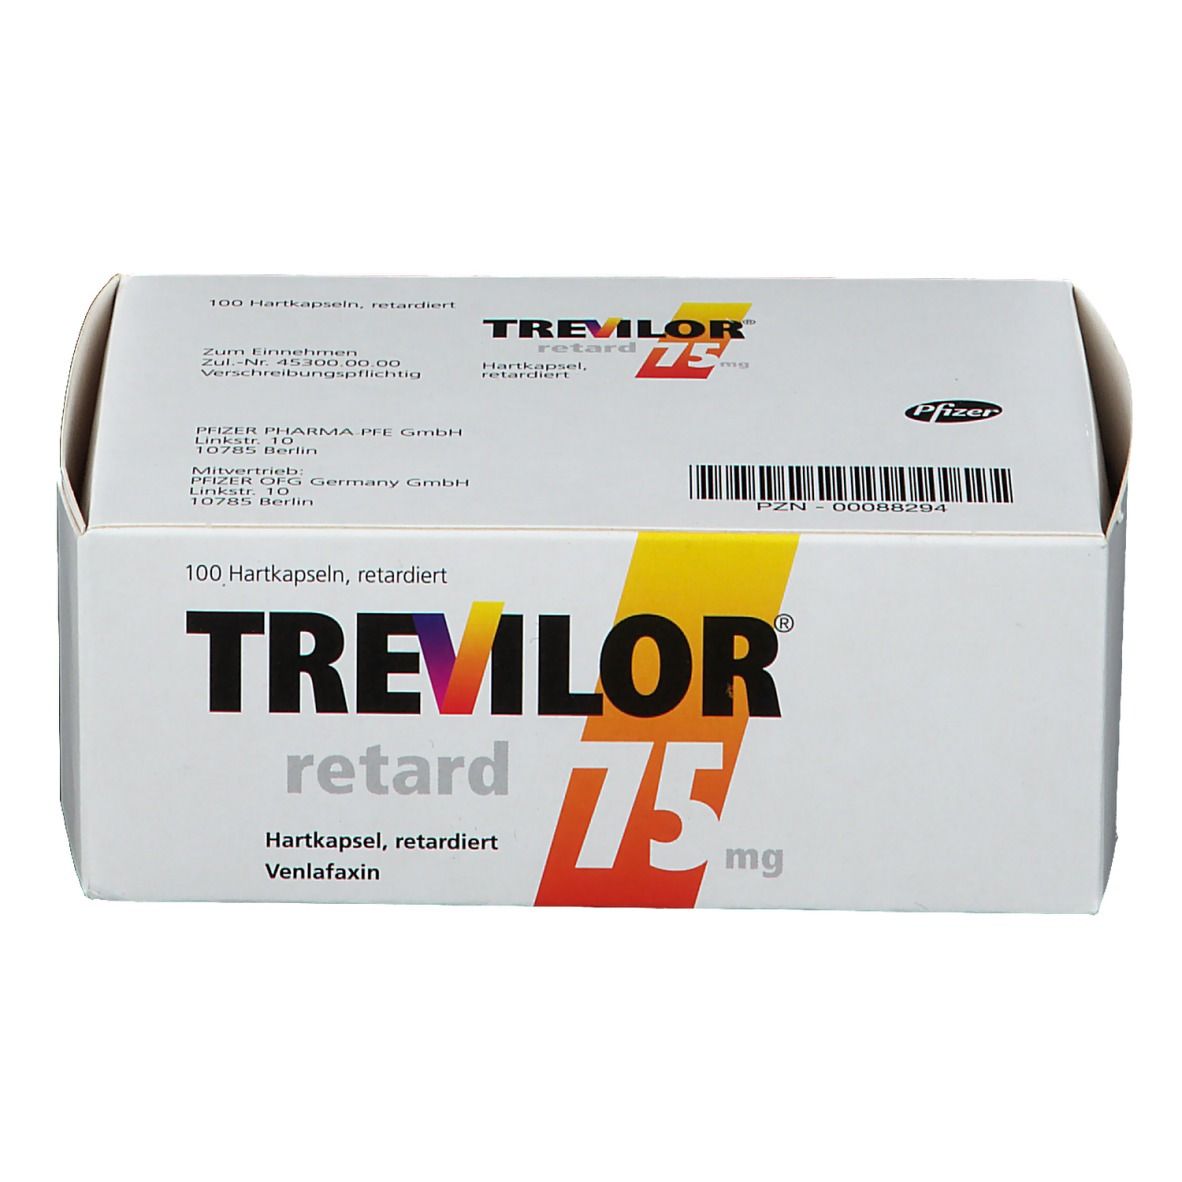 Trevilor® retard 75 mg